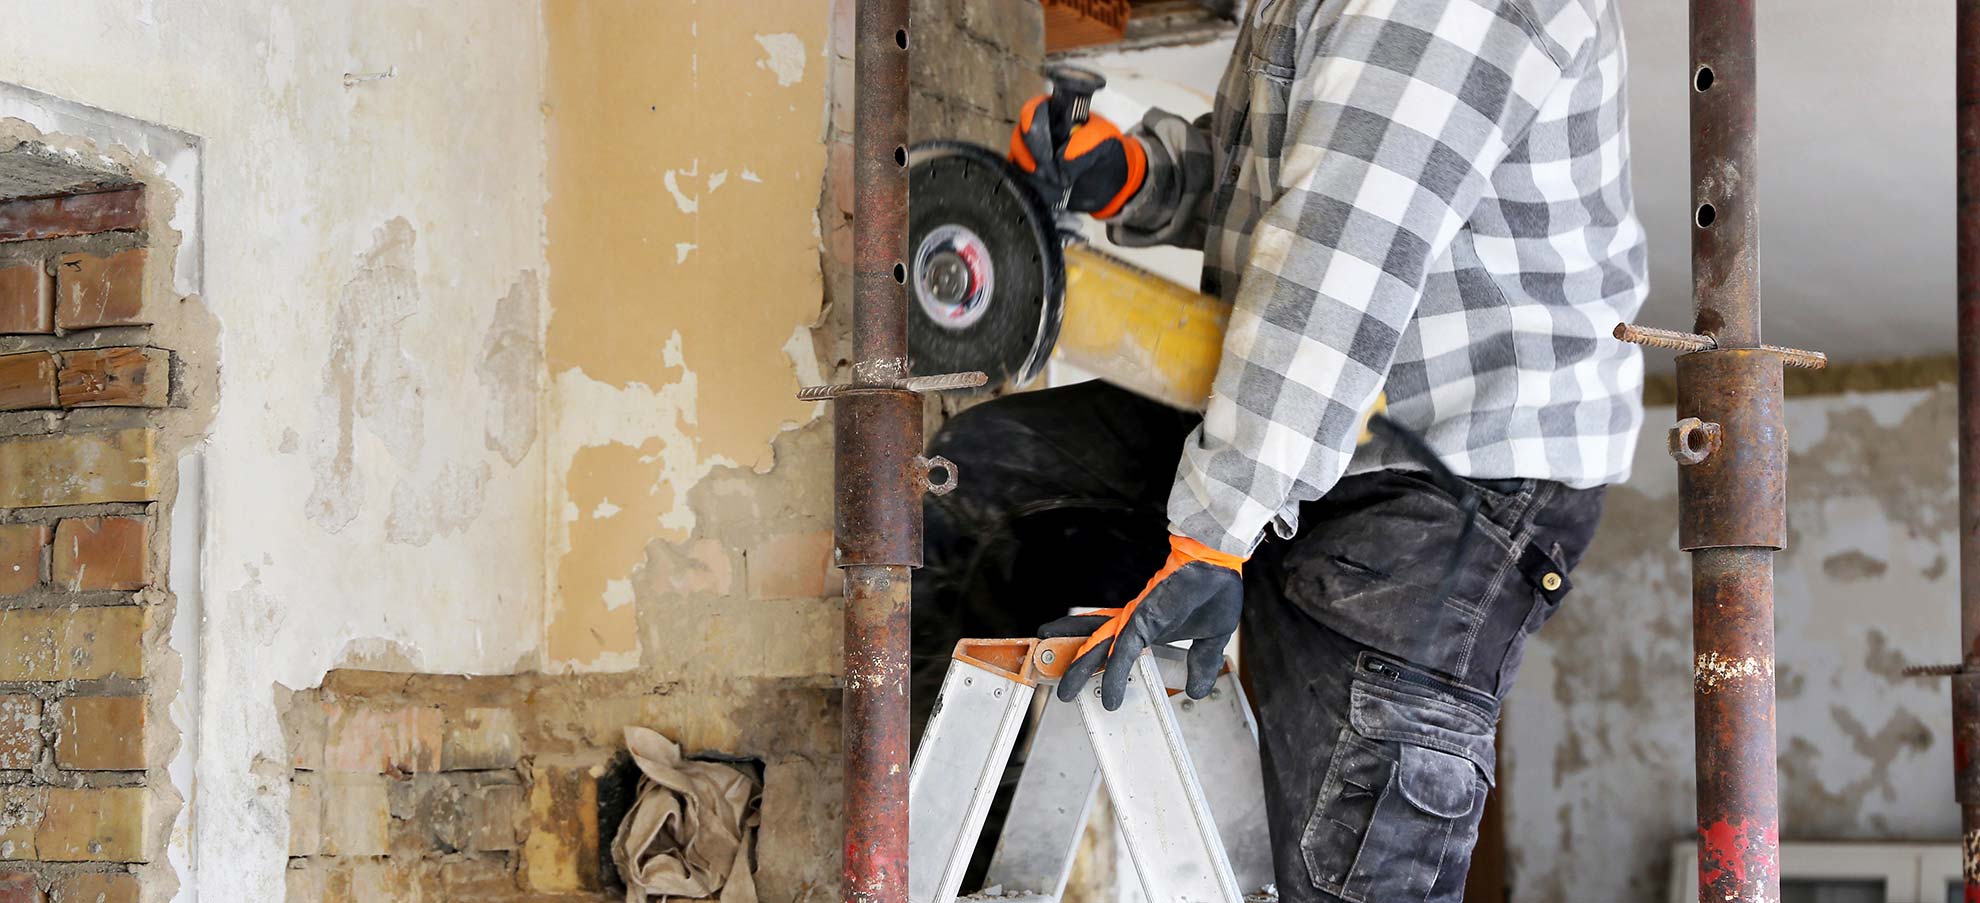 Ein Handwerker, von dem nur der Unterkörper sichtbar ist, steht auf einer Leiter in einem entkernten Gebäude mit einem Flex Werkzeug in der Hand.